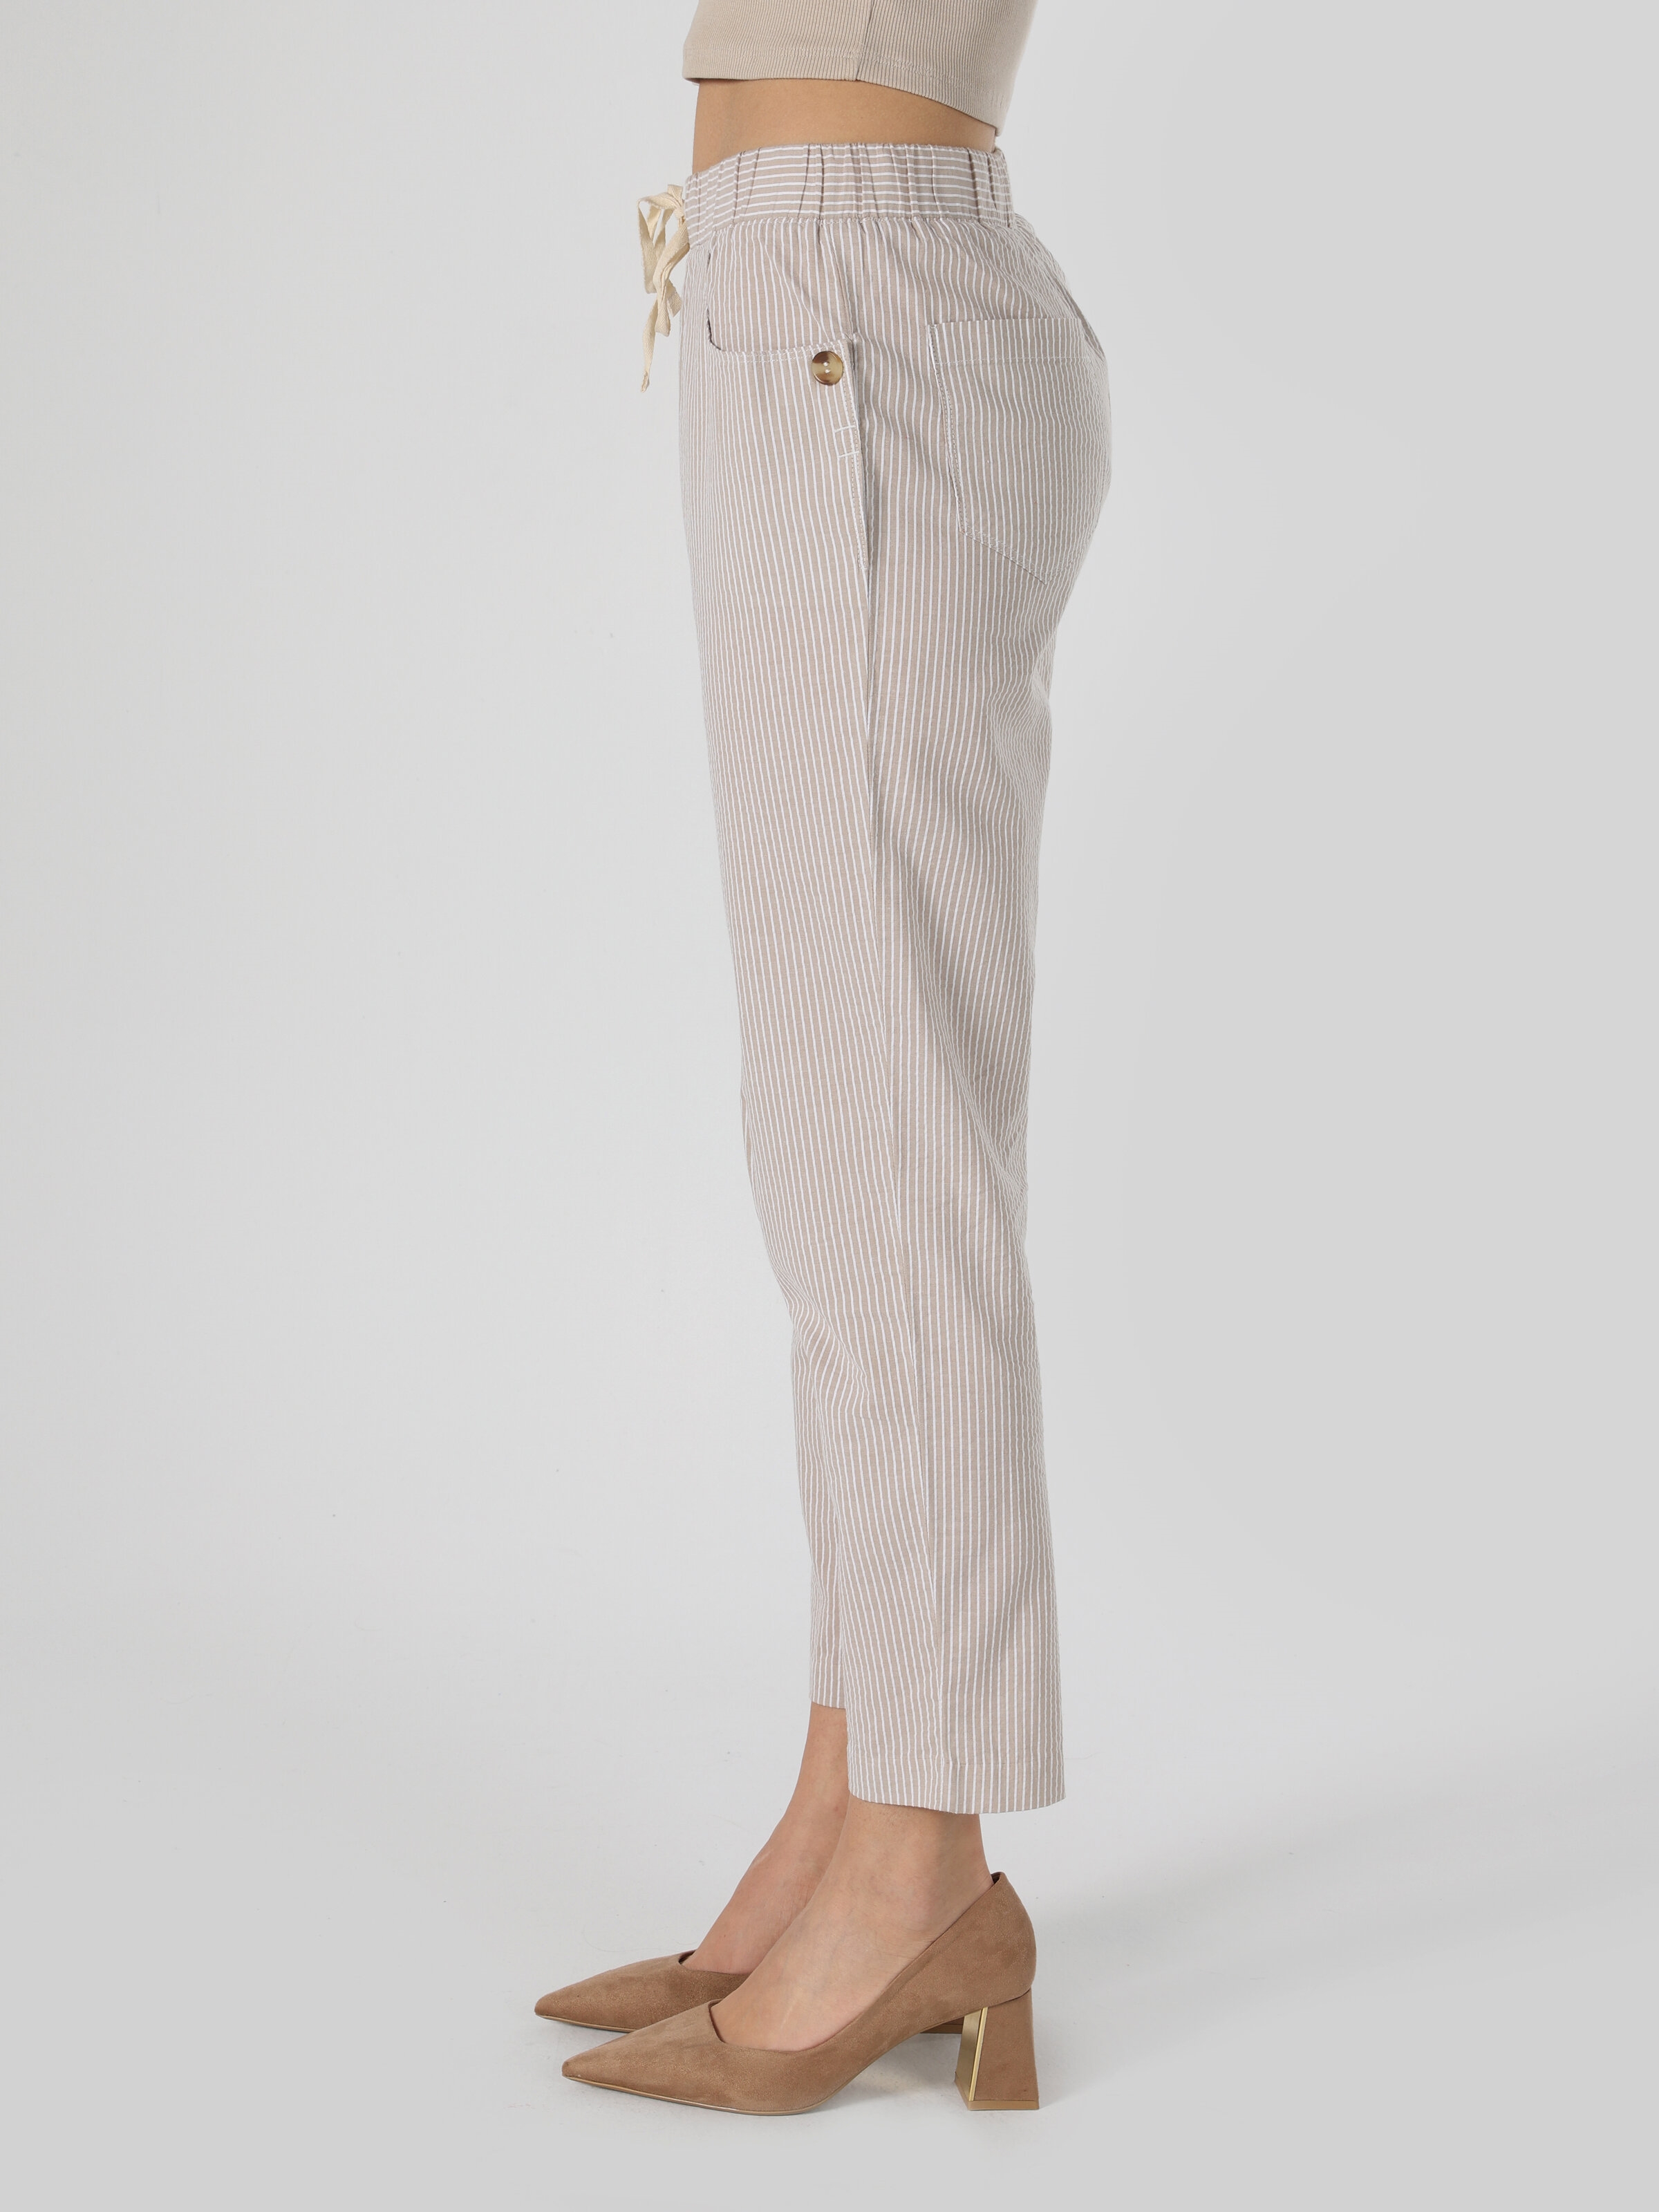 Afficher les détails de Pantalon Femme Beige Coupe Normale Taille Basse Jambe Droite